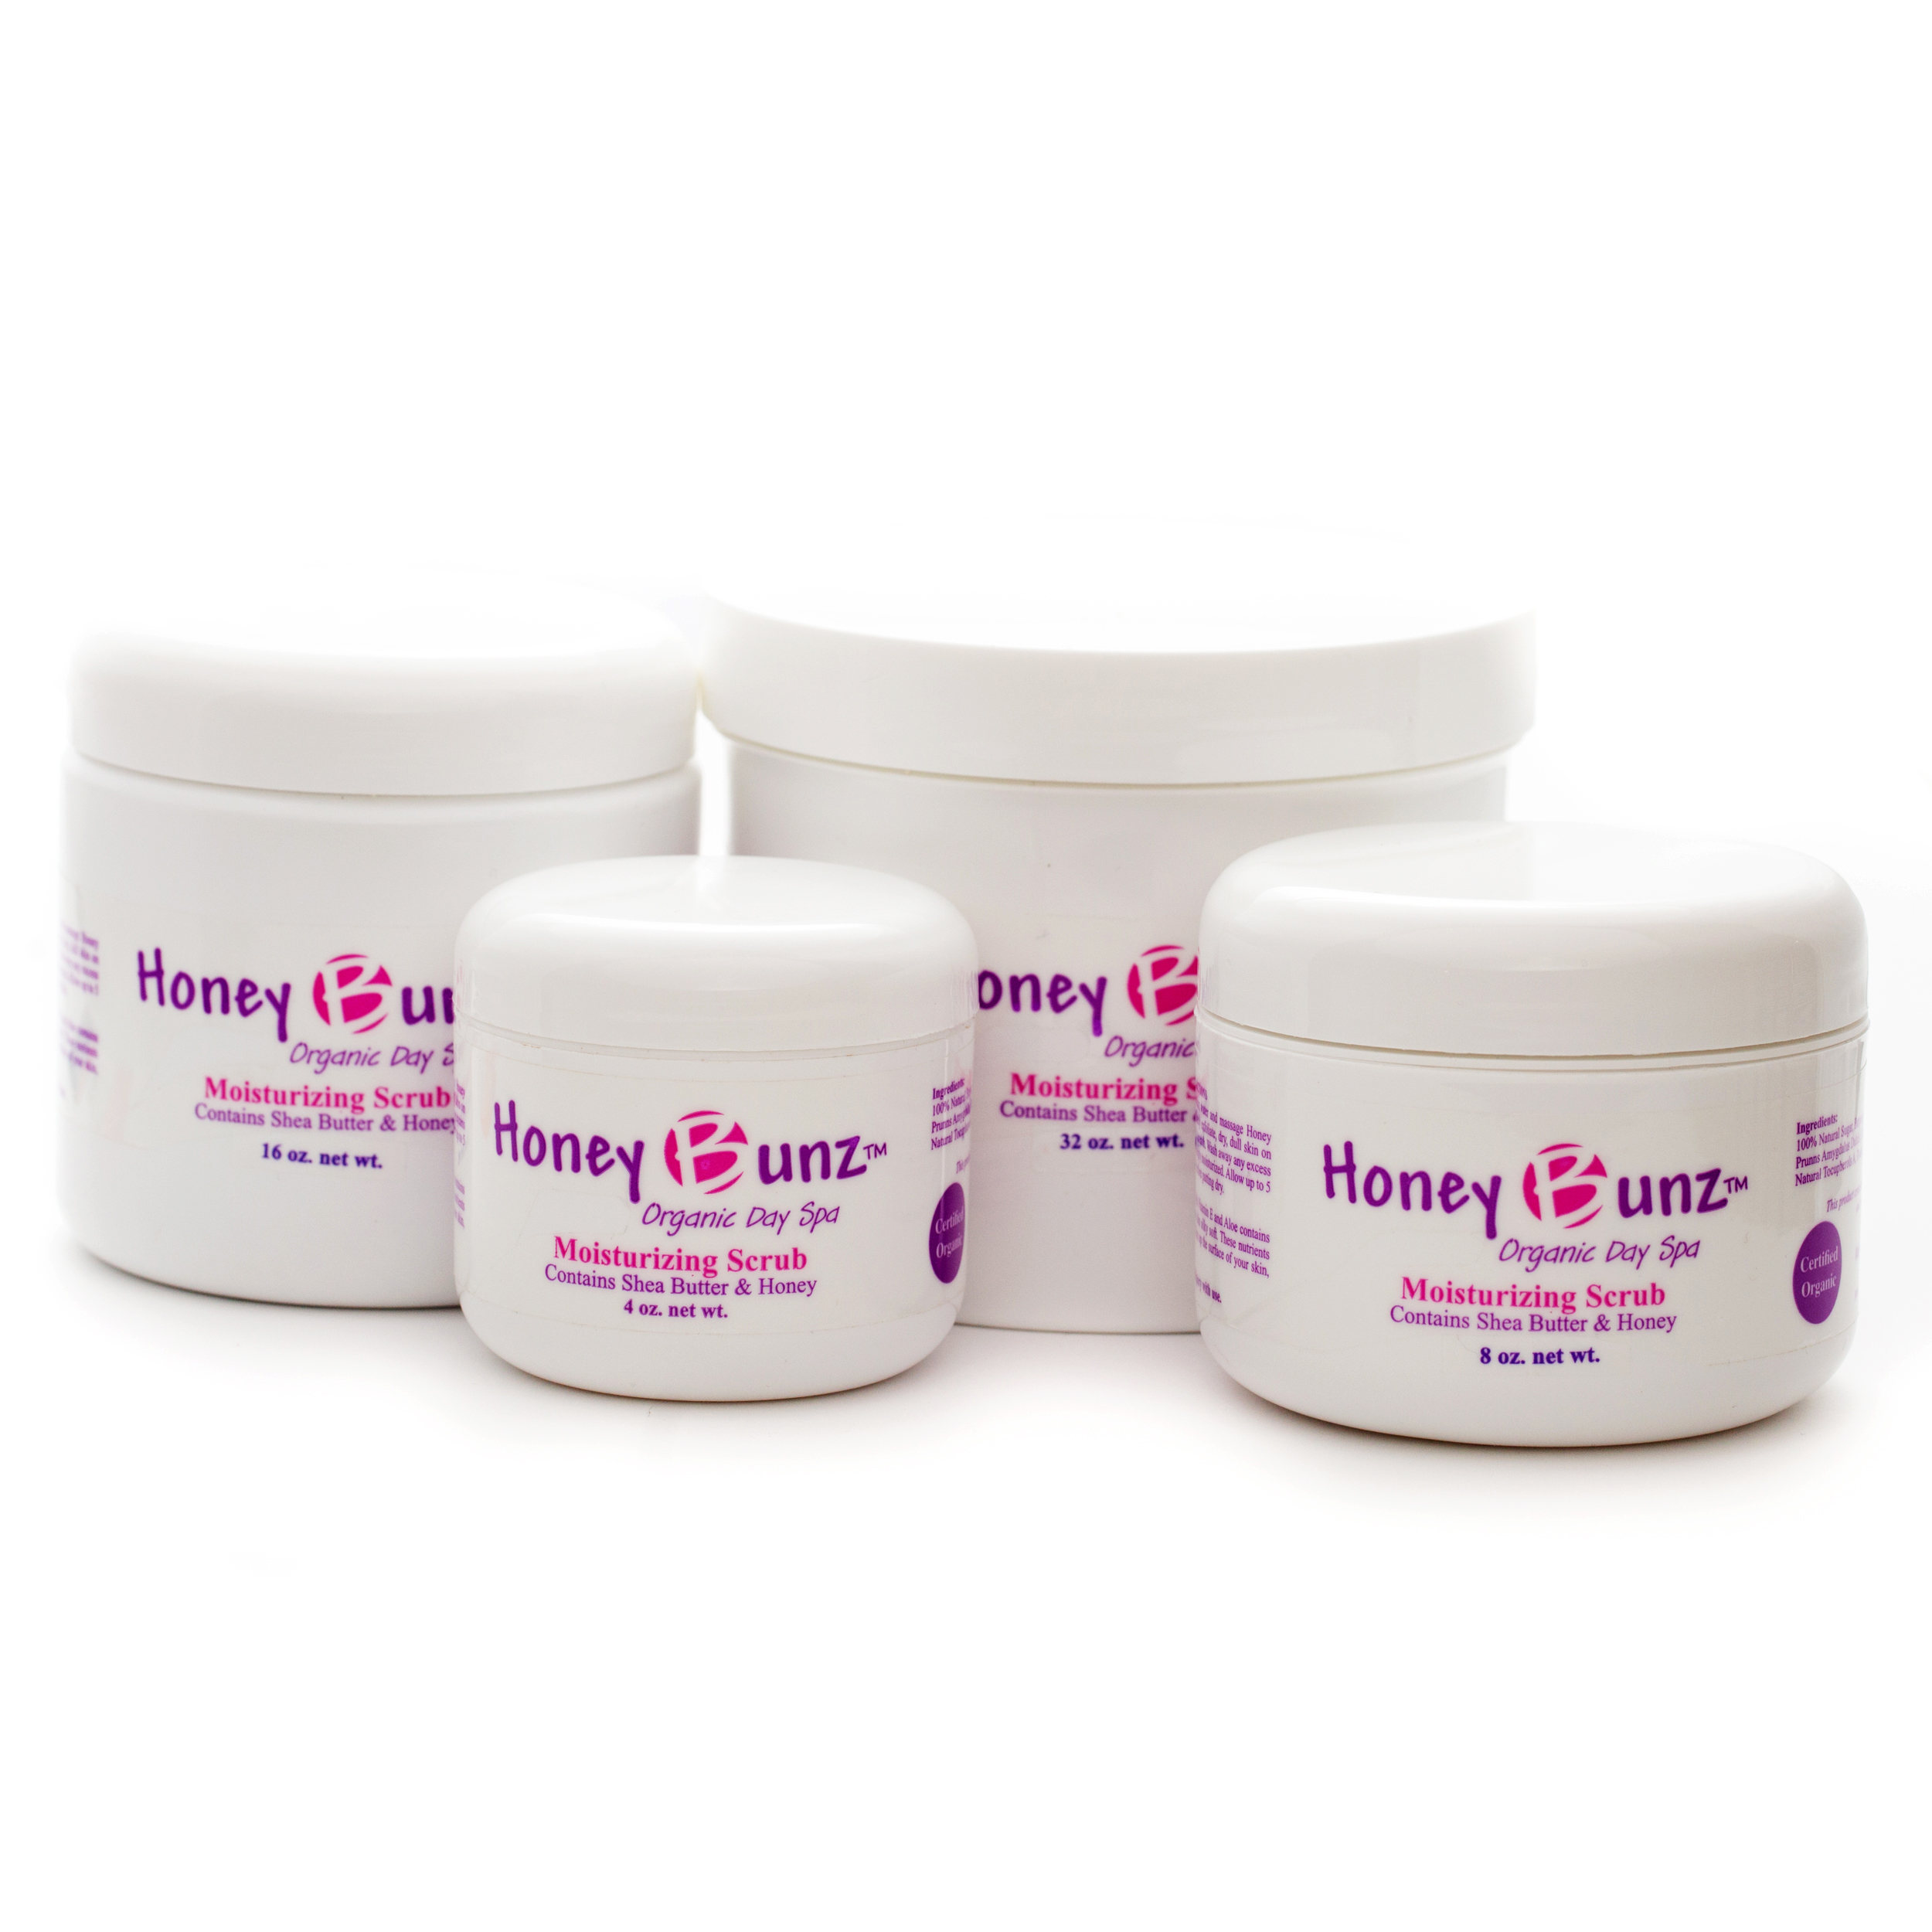 Honey Bunz™ Moisturizing Scrub Honey Bunz Organic Day Spa